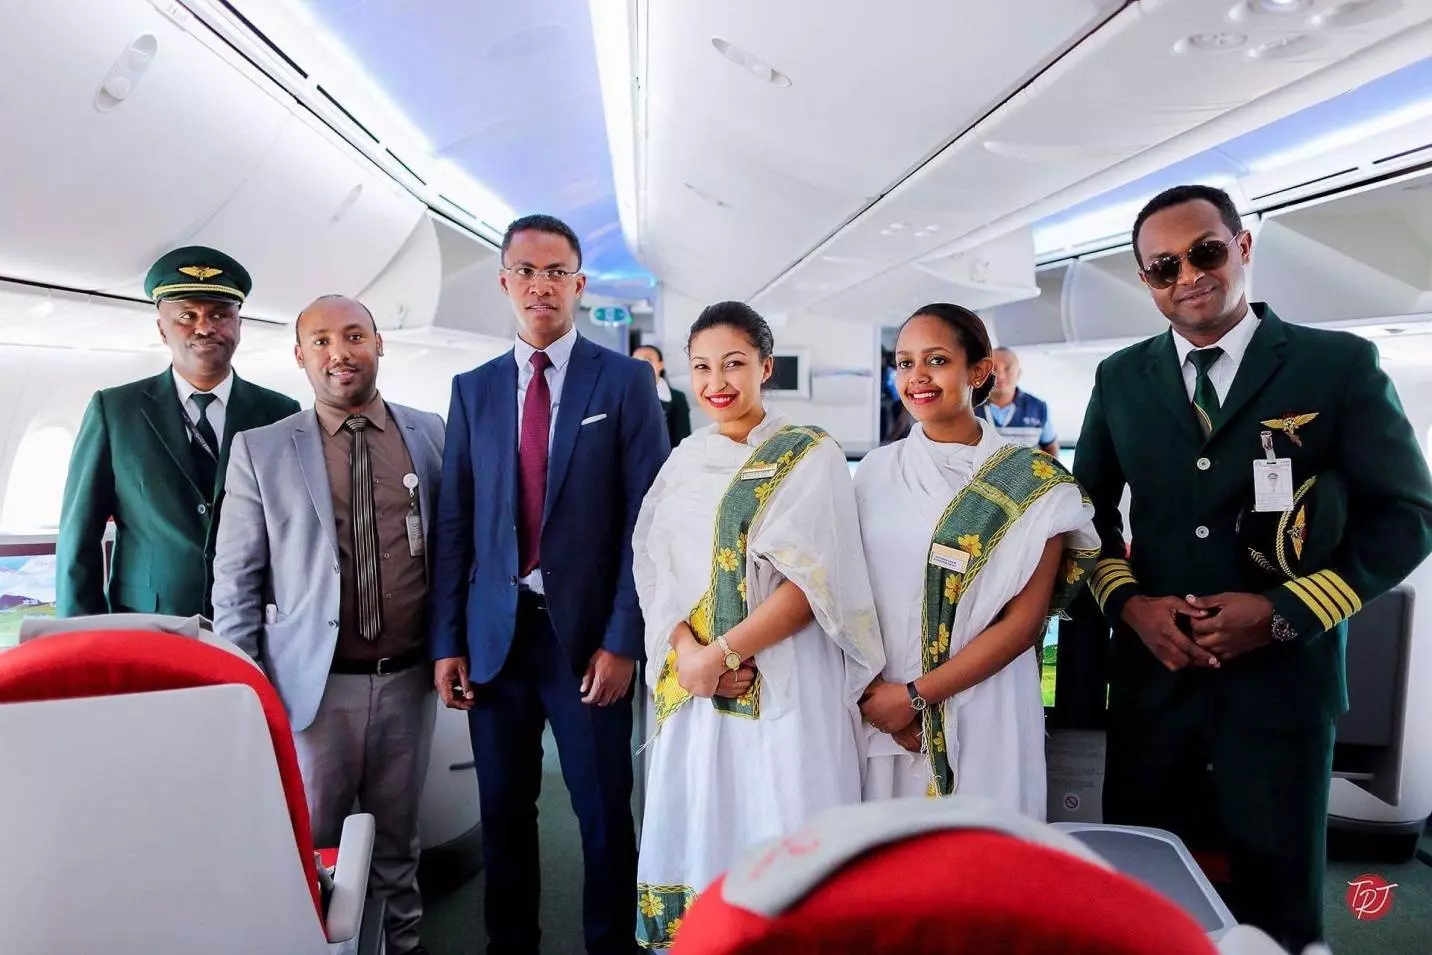 Трагедия 35-ти государств. факты о крушении самолета ethiopian airlines в эфиопии